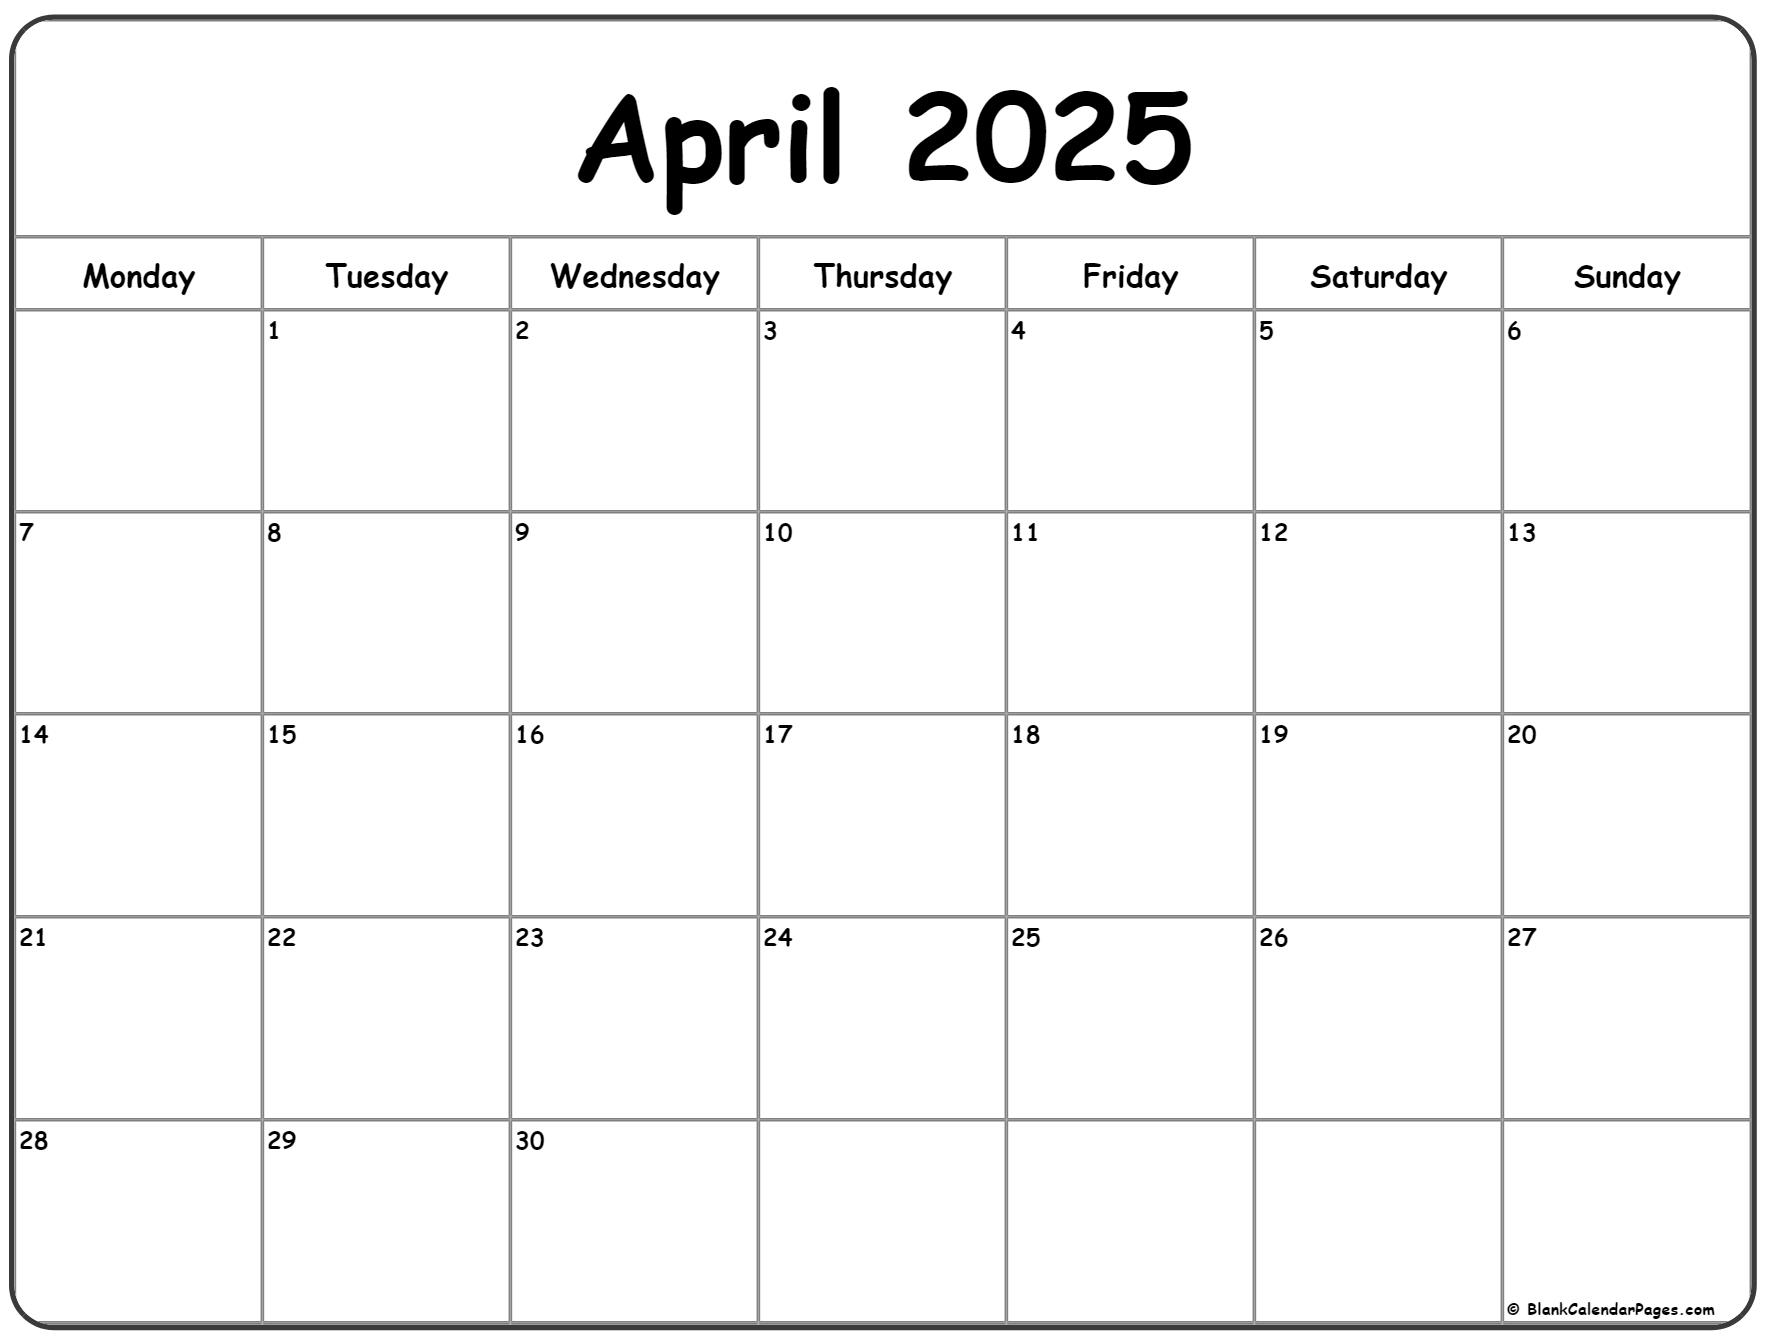 April 2025 Monday calendar. Monday to Sunday